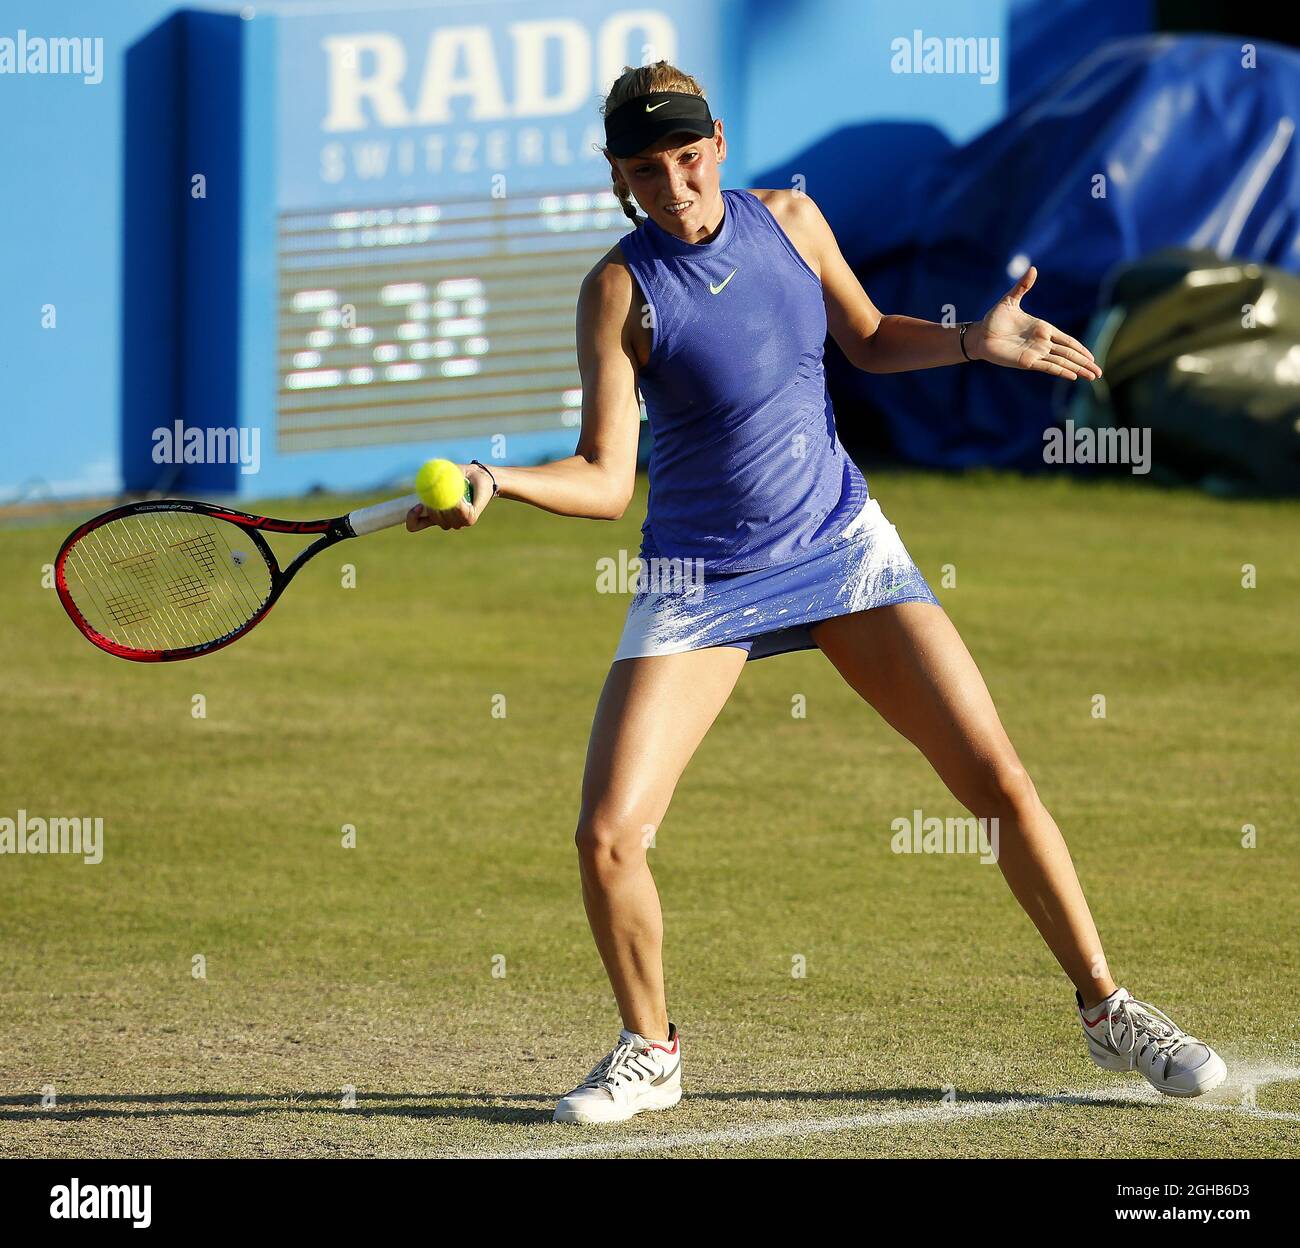 Donna Vekic di Croazia durante il 6° giorno di AEGON Nottingham al Nottingham Tennis Centre. Data foto: 16 giugno 2017. Il credito dovrebbe essere: Matt McNulty/Spaltimage via PA Images Foto Stock